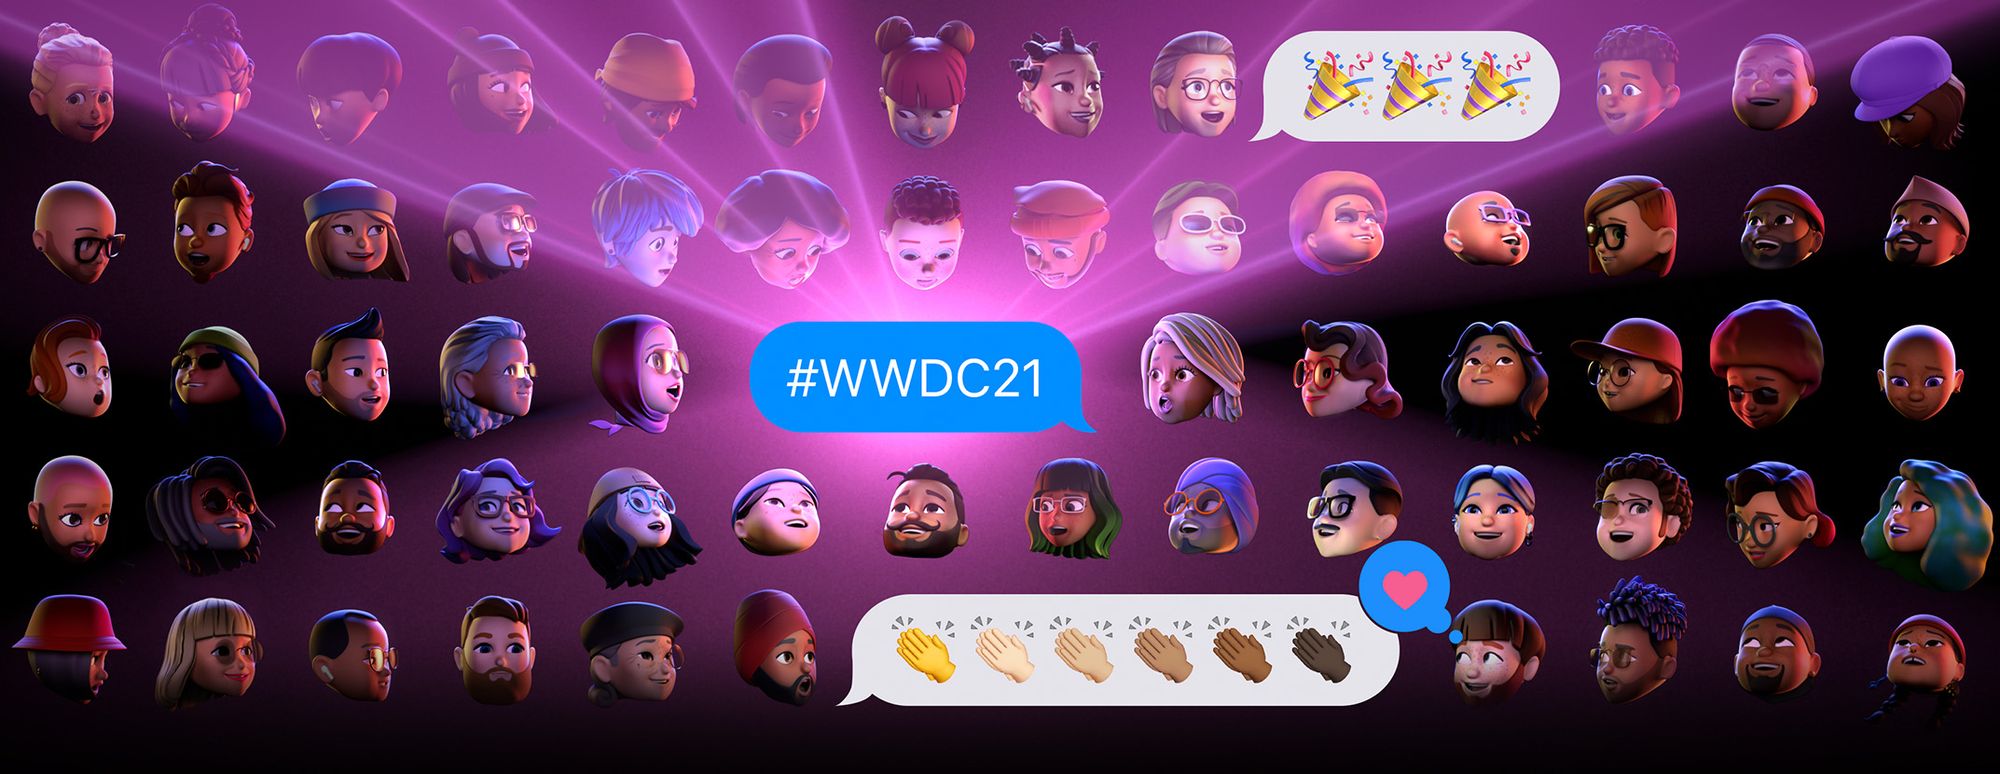 WWDC21 Keynote 発表内容まとめ